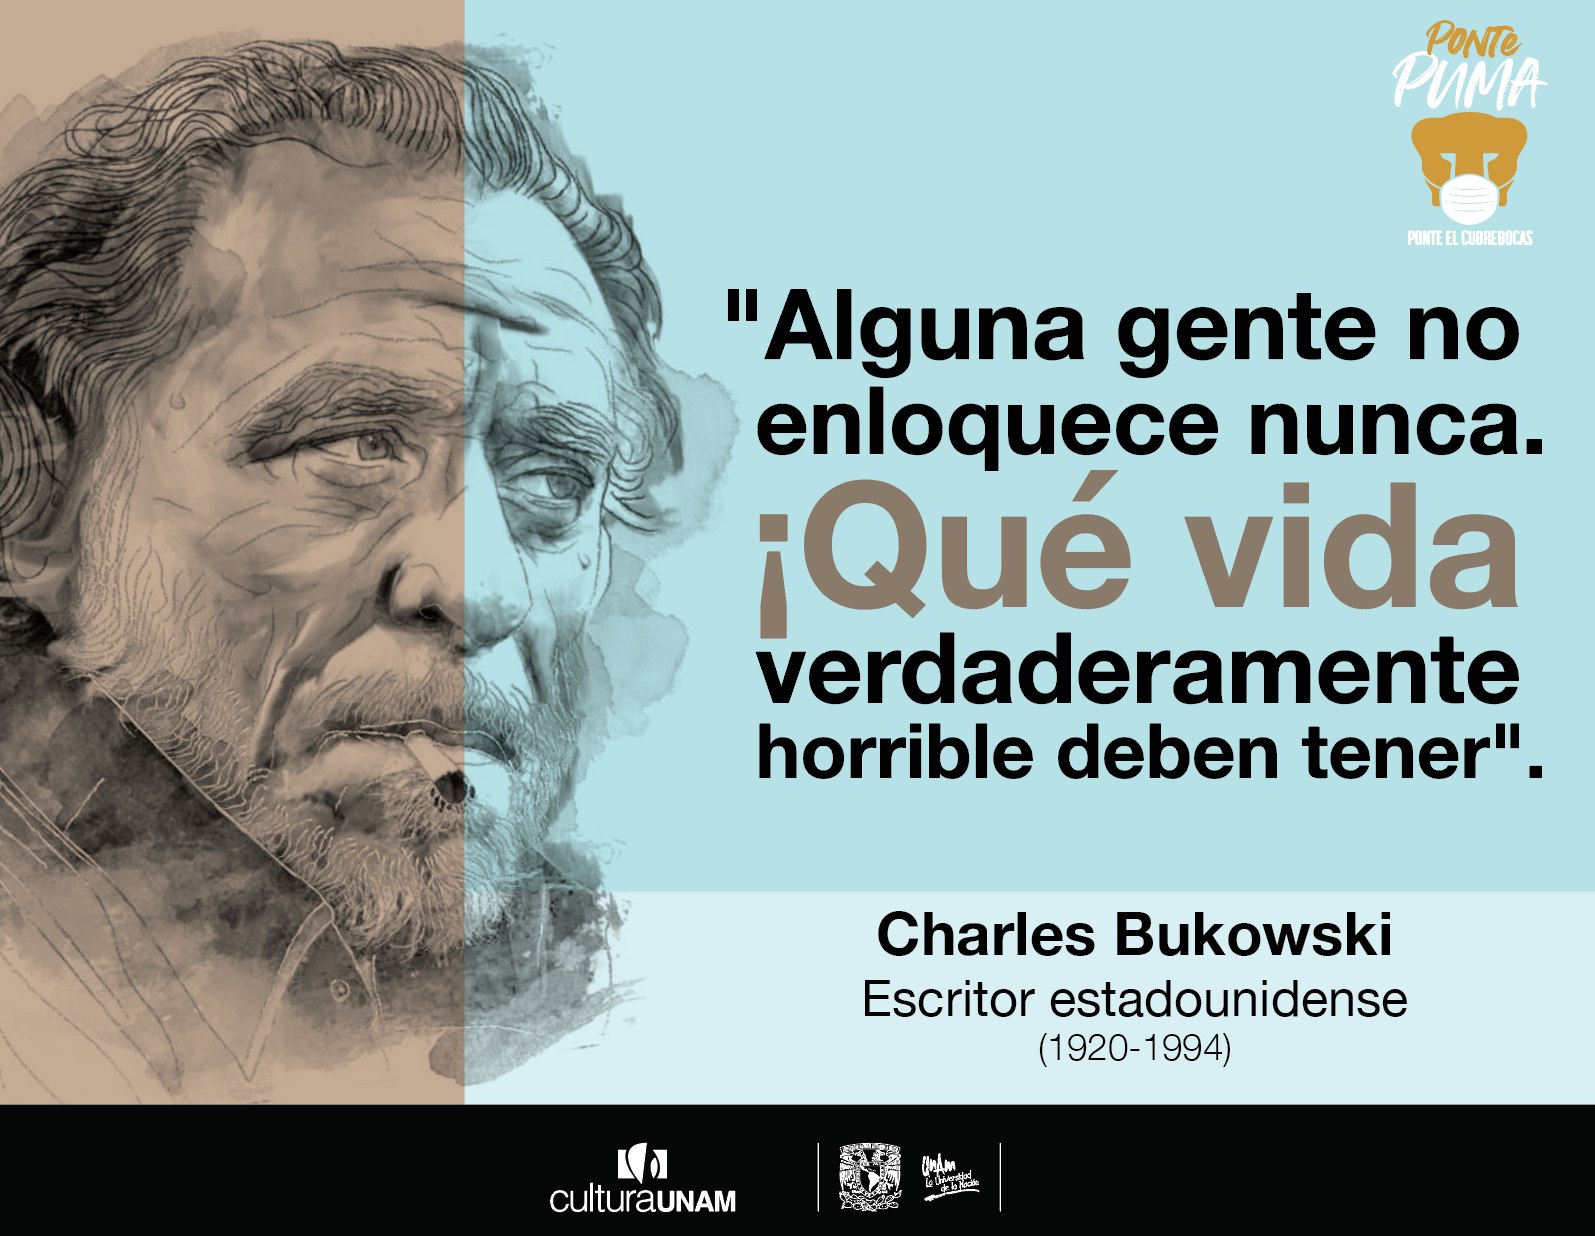 CulturaUNAM on X: "#UnDíaComoHoy de 1920 nació Charles Bukowski, escritor alemán nacionalizado estadounidense. Desarrolló el conocido como "realismo sucio", estilo criticado por ser soez y misógino. Sin embargo, hay quien lo cataloga